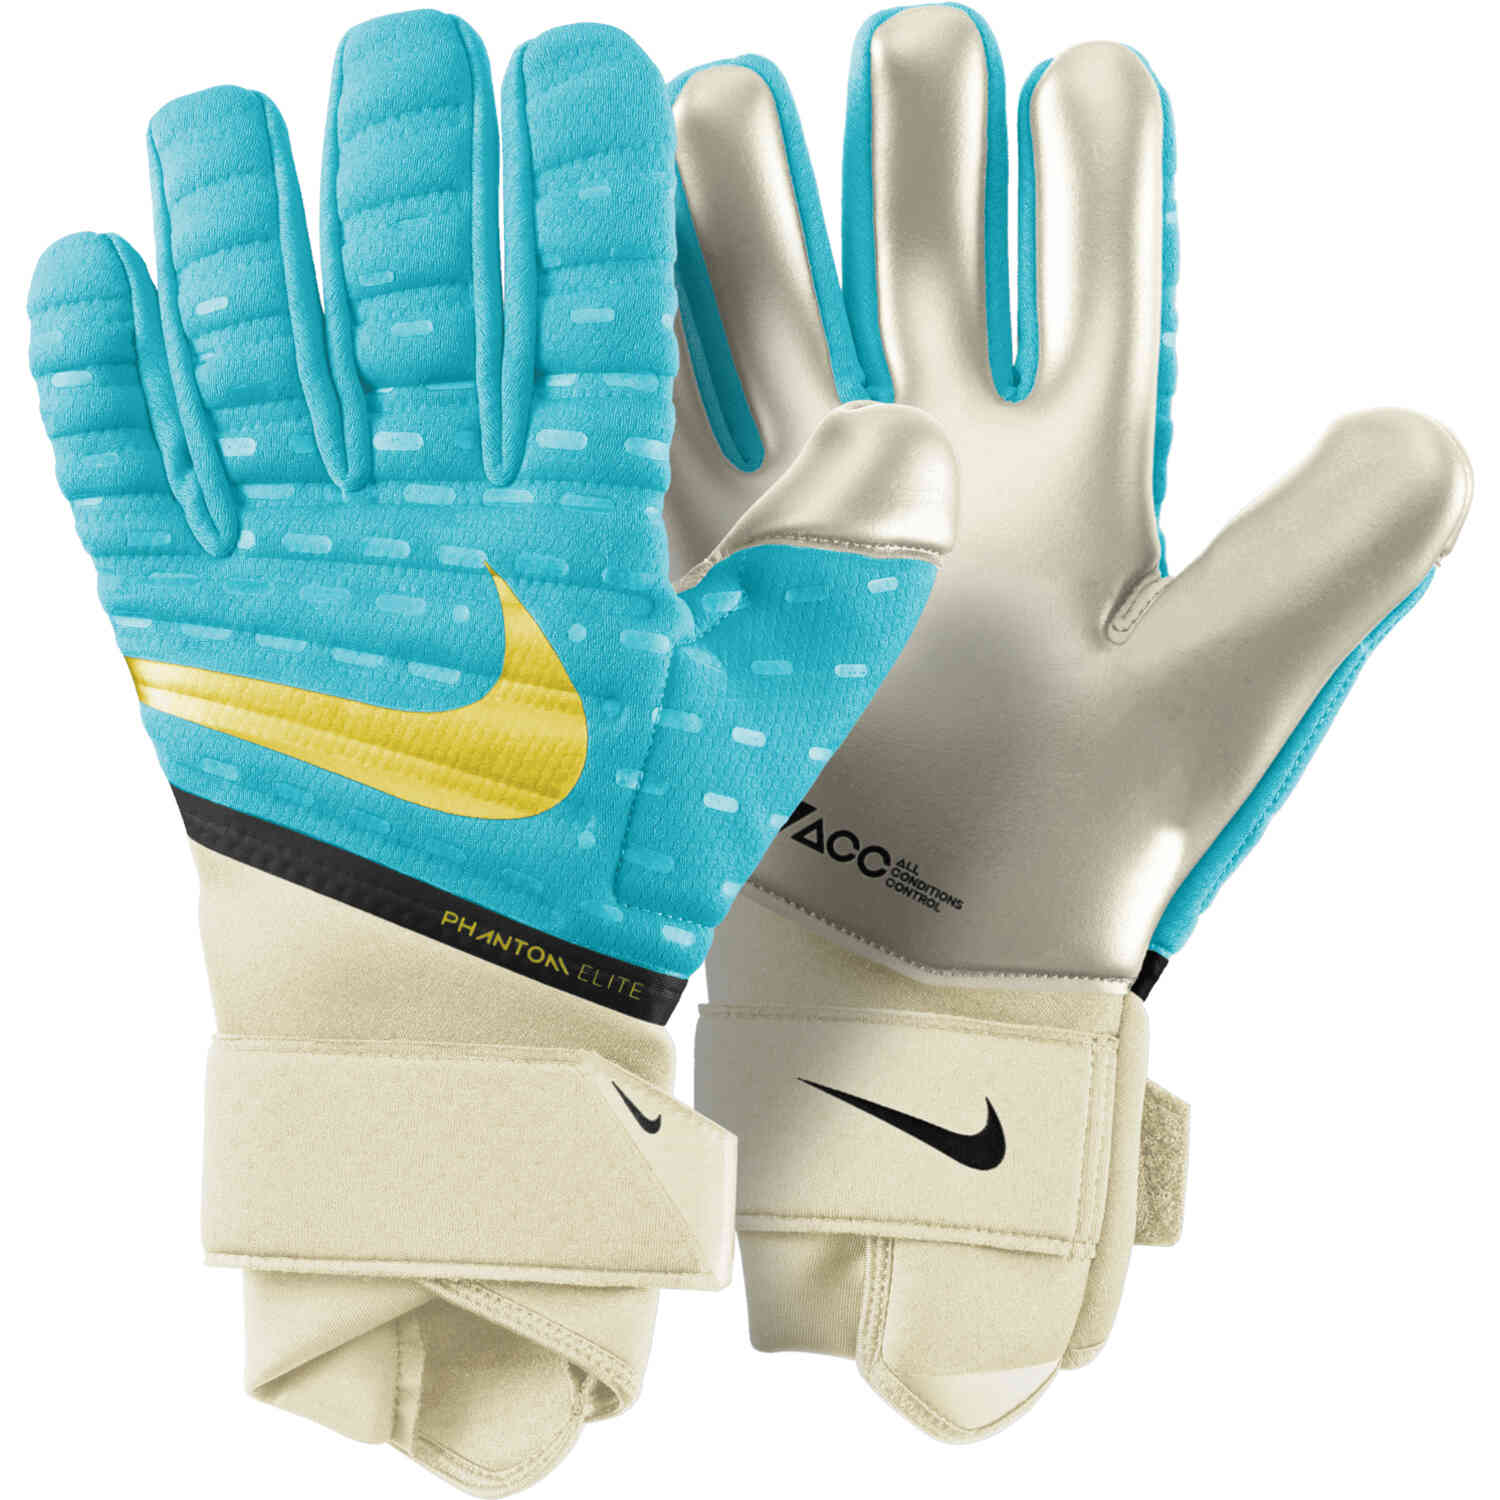 Nike Phantom Elite Goalkeeper Gloves - Lucent Pack - SoccerPro